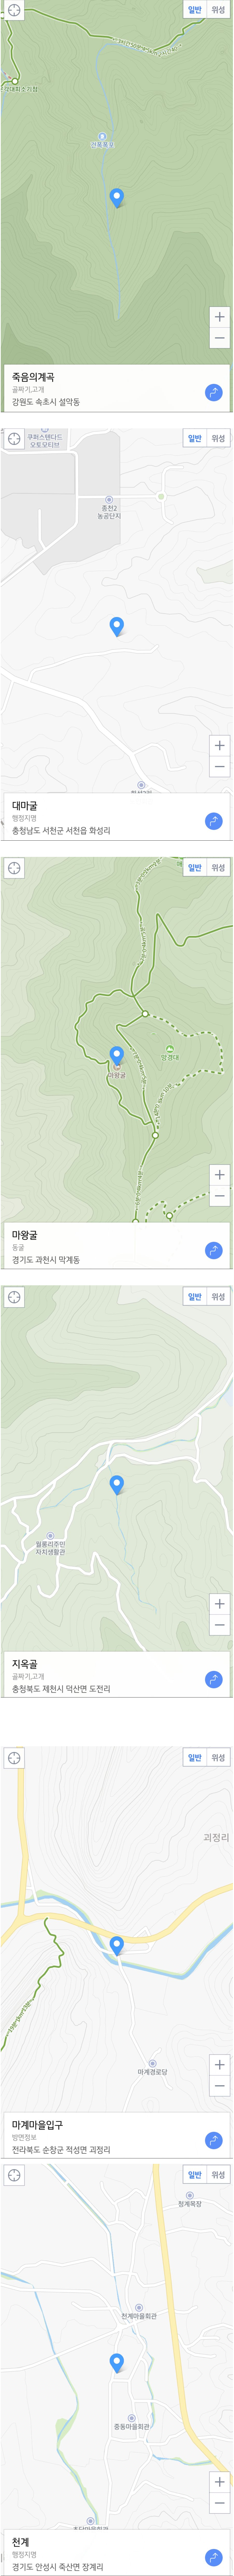 Korea's unexpectedly real name